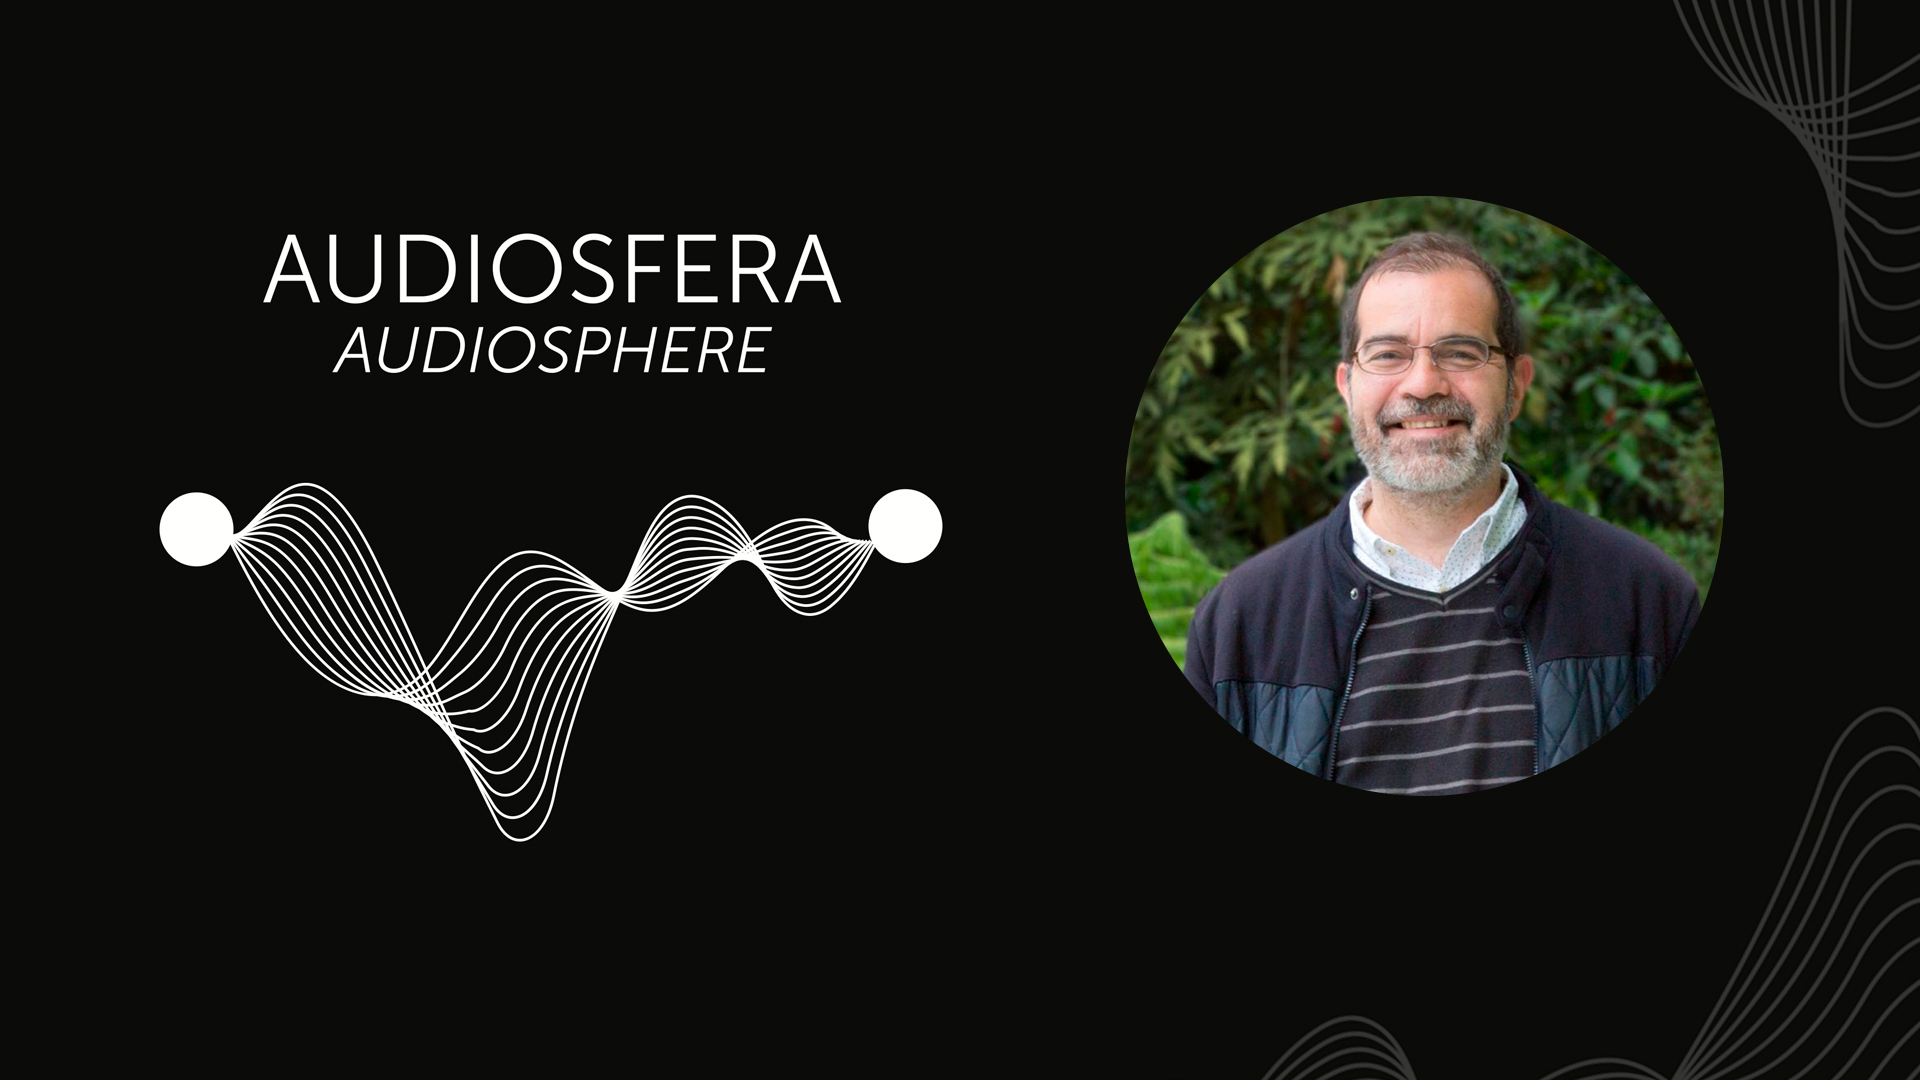 Nuestro profesor Ricardo Arias participa en “Audiosfera” exposición del Museo Reina Sofía